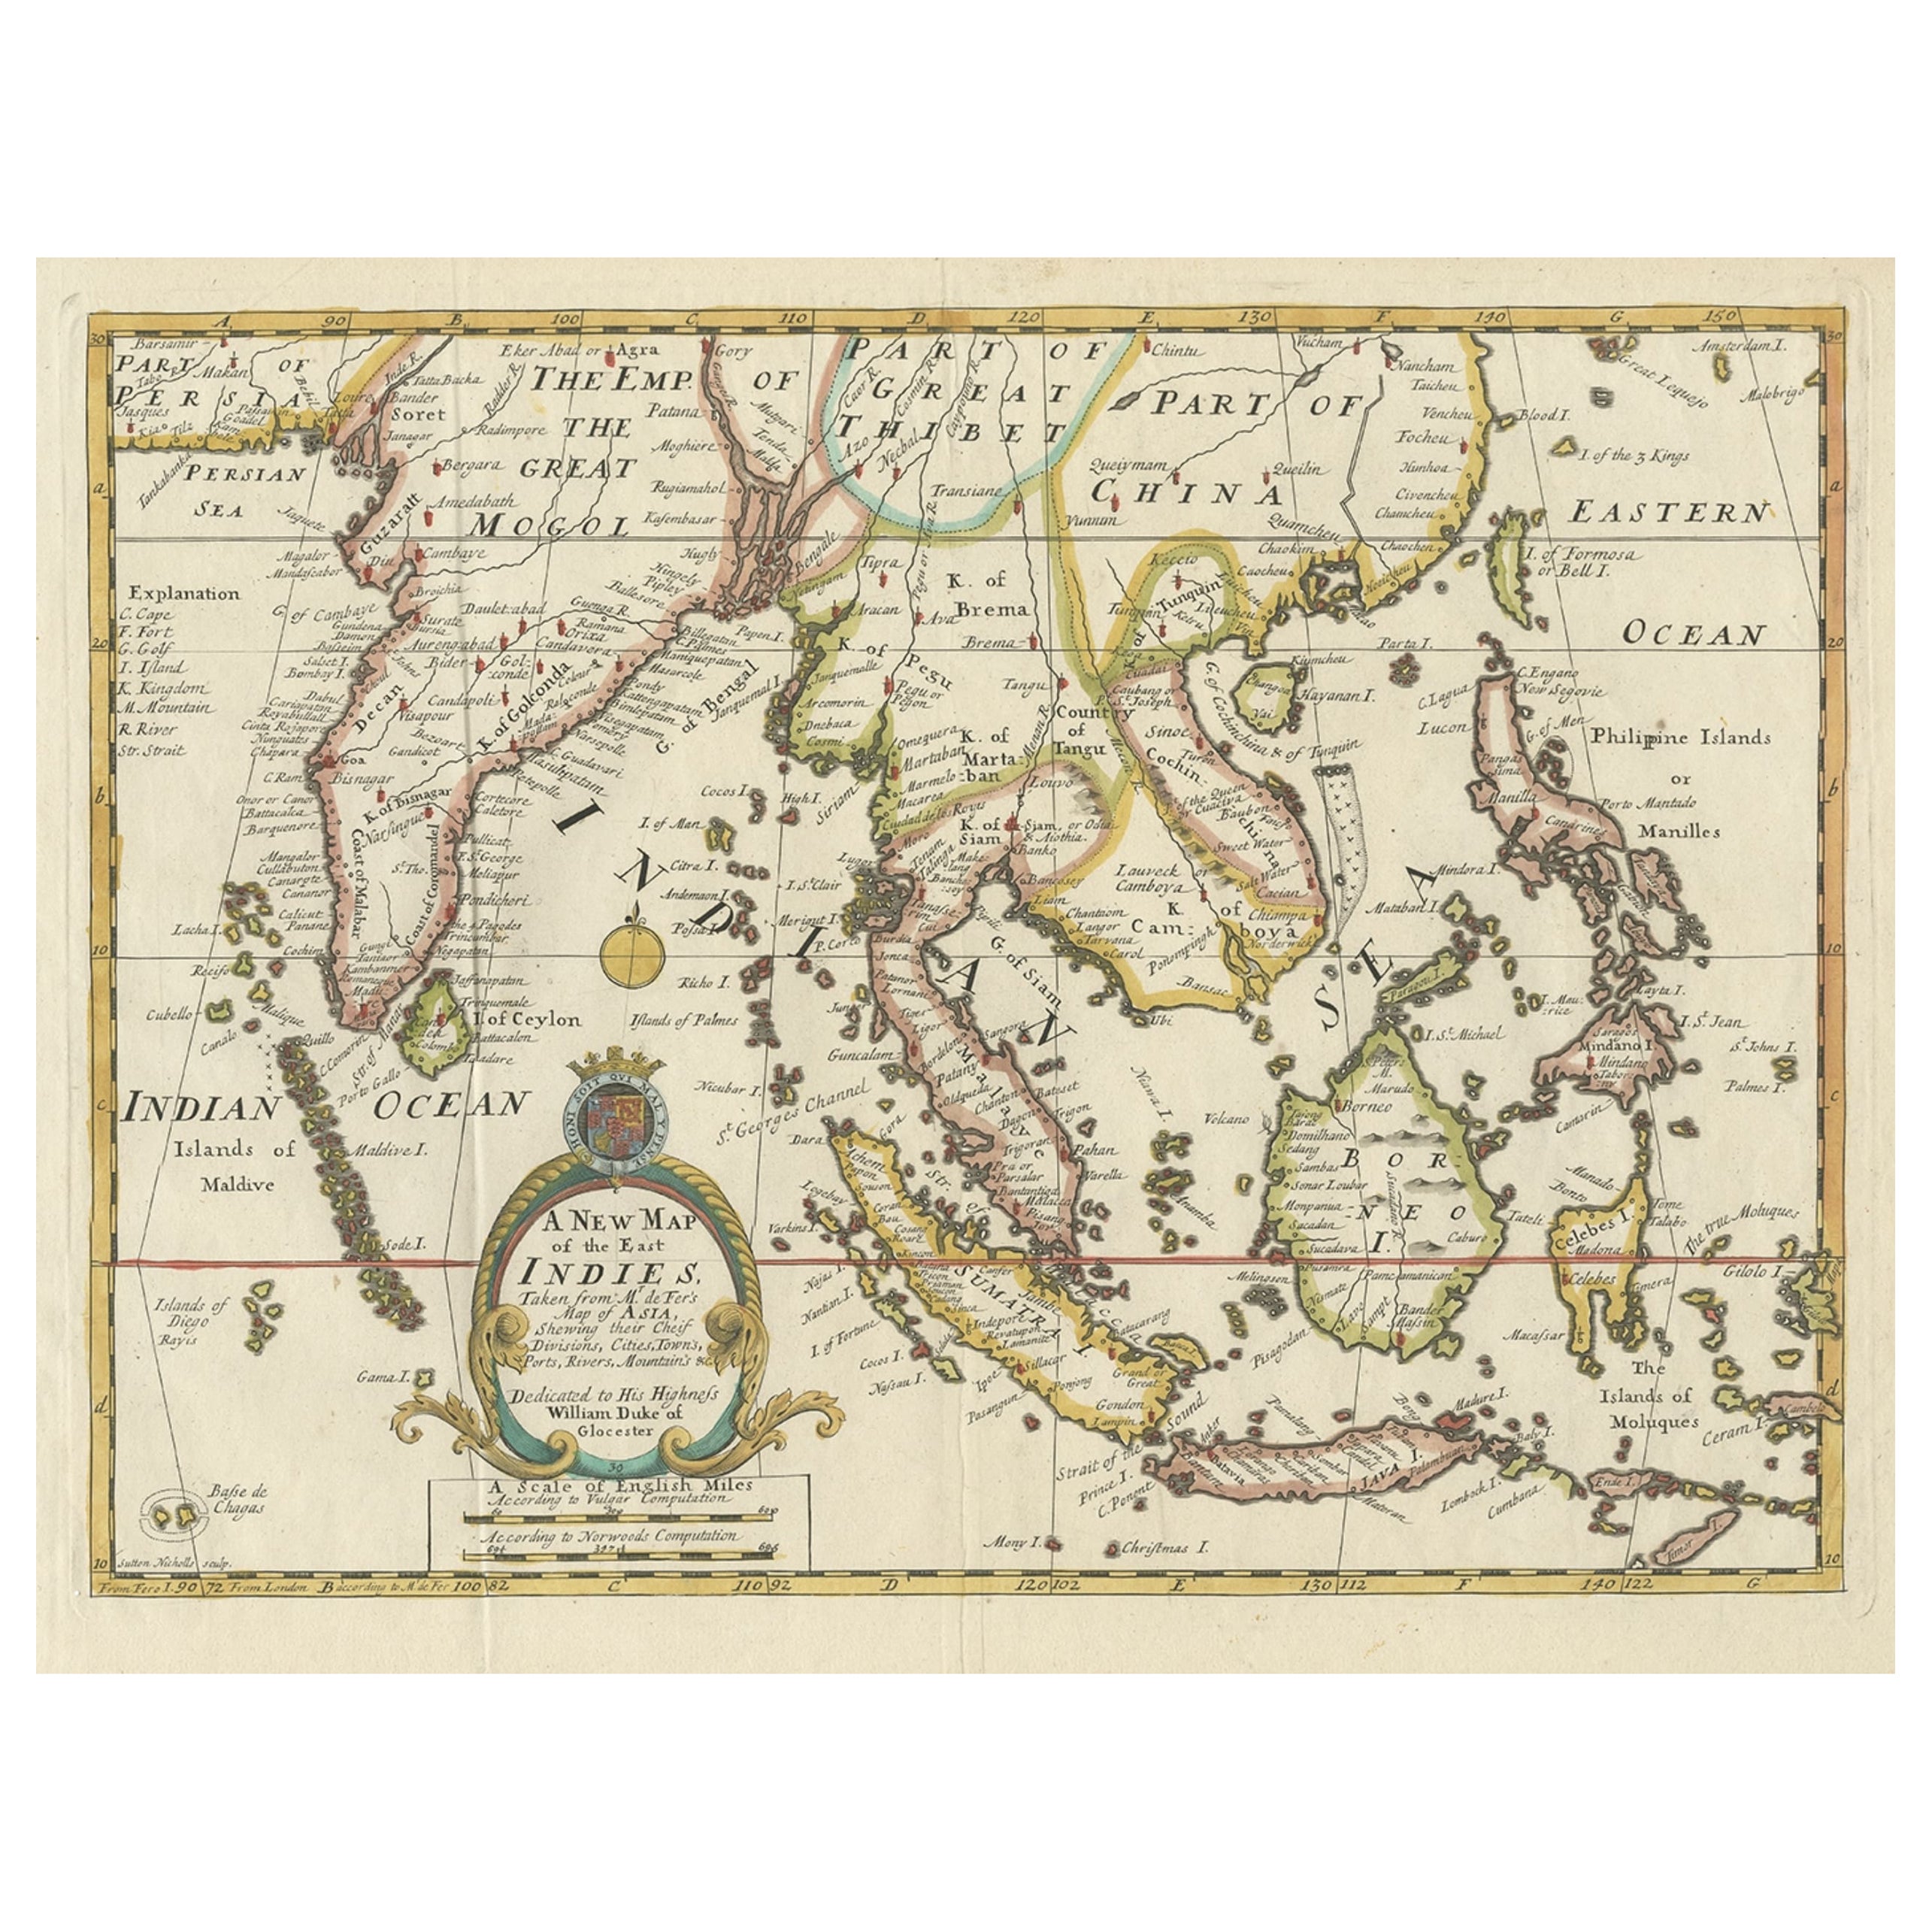 Alte Karte, die ganz Southeast Asia von Persien bis zur Insel Timor abdeckt, 1712